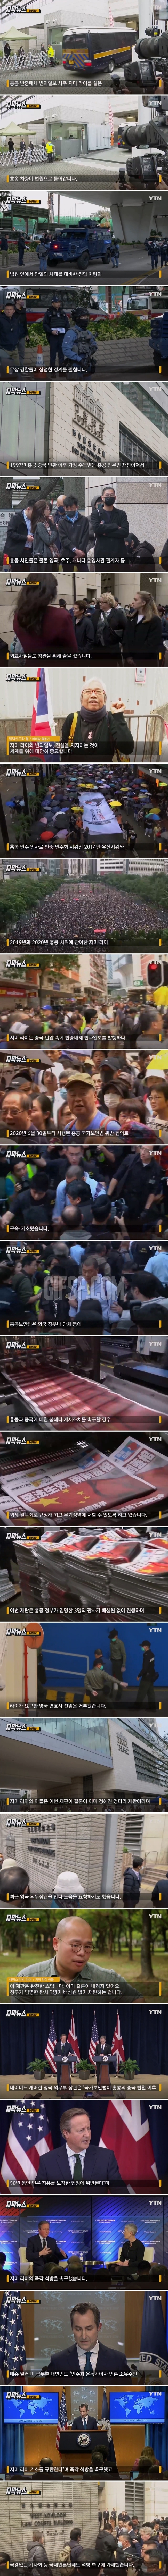 언론 자유 잃었나.홍콩 ',반중 매체', 소유주 재판에 쏠리는 국제적 관심.jpg